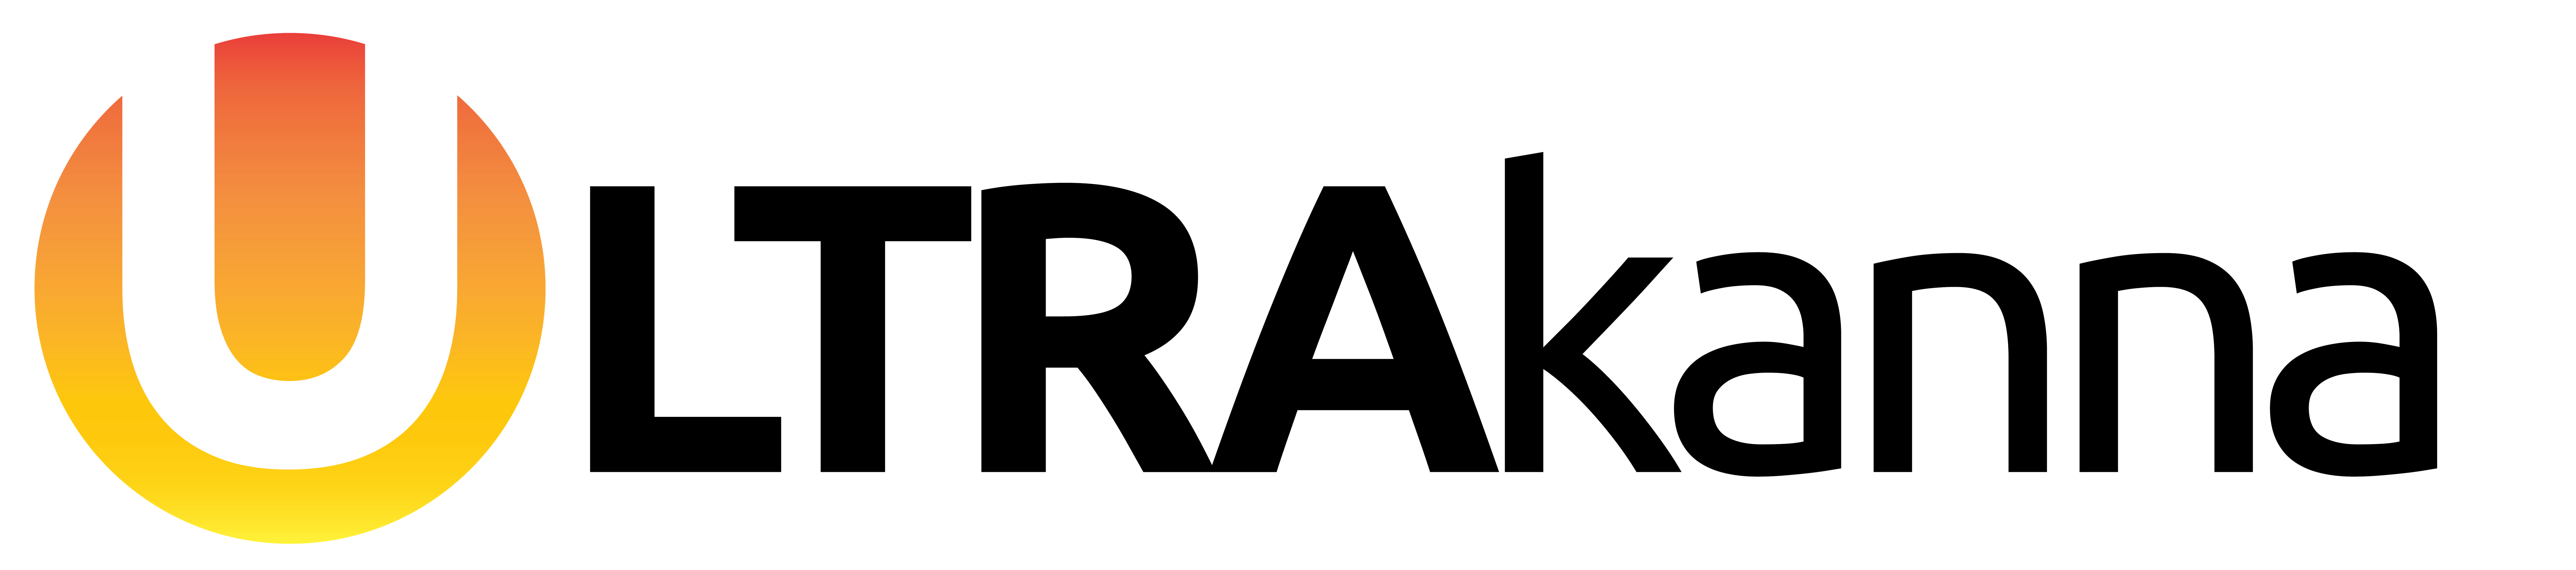 ULTRAKanna Logo